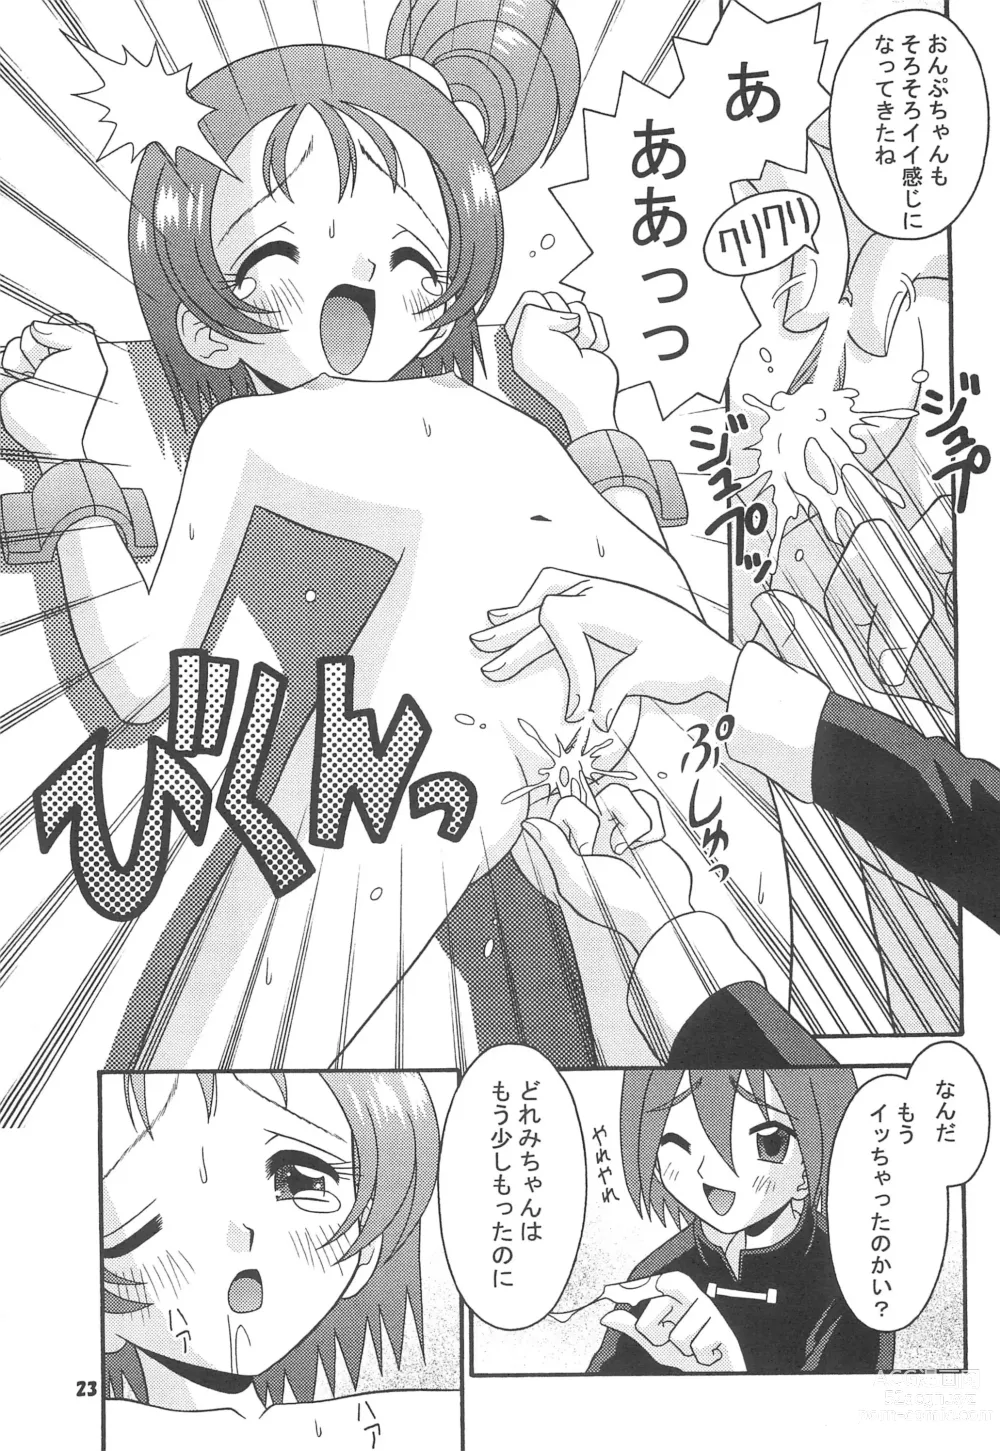 Page 25 of doujinshi Subete no Mirai ni Hikari are 4